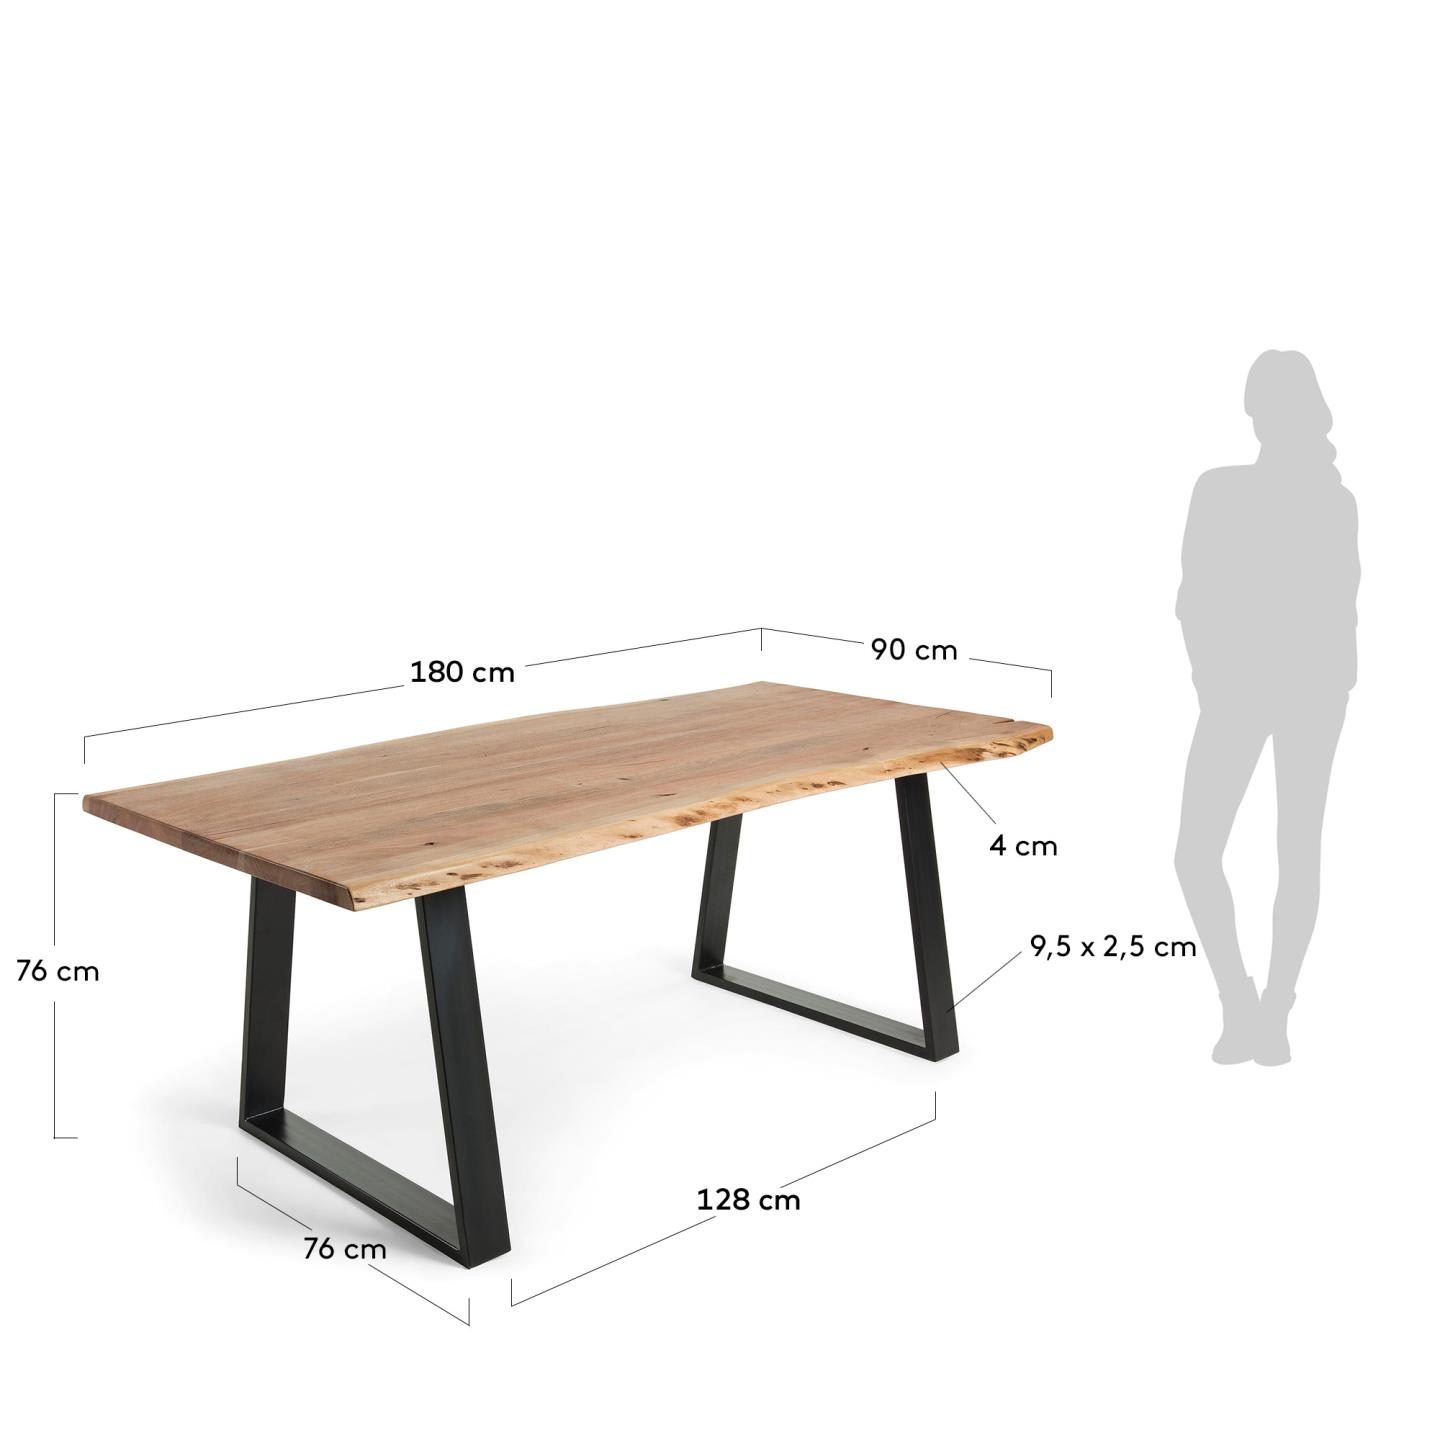 엘리아 아카시아 원목 네츄럴 다이닝 테이블 180x90cm - 크기